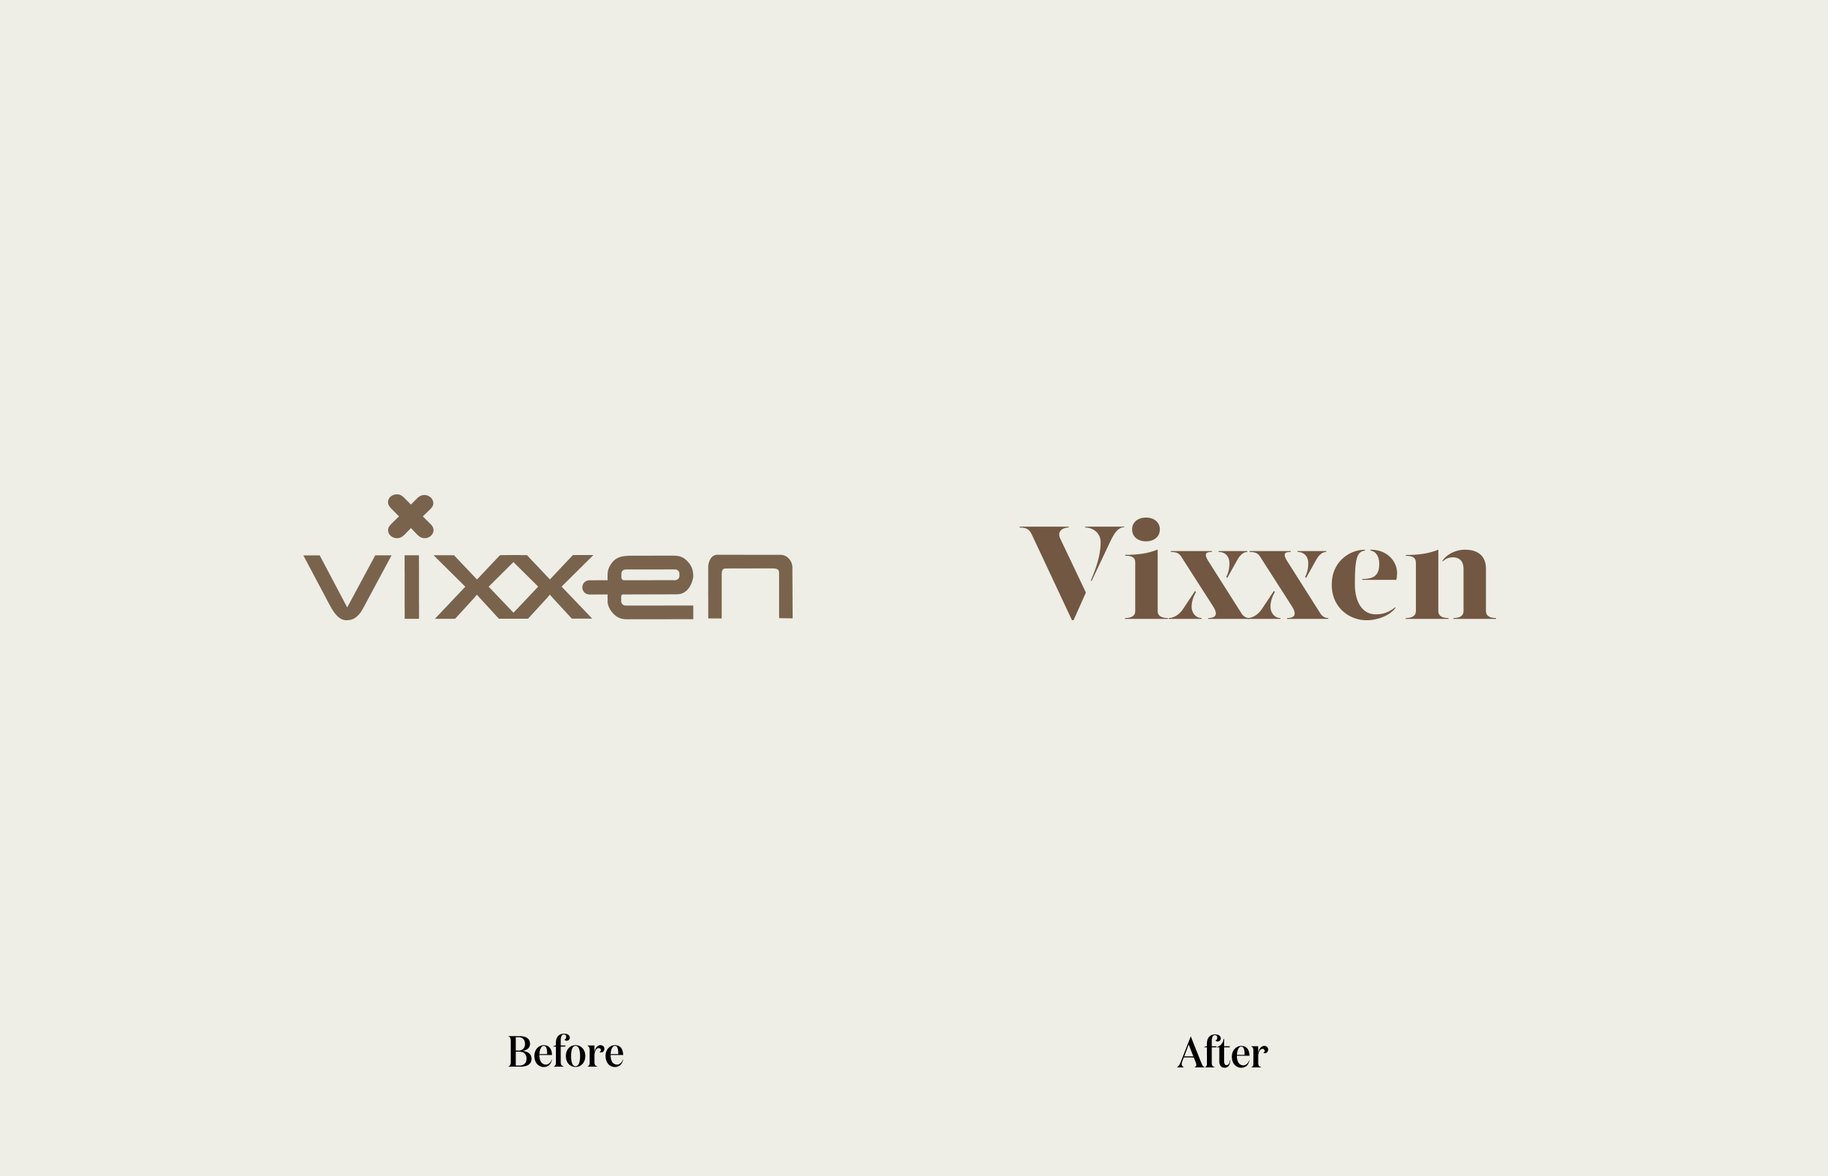 Vixxen image